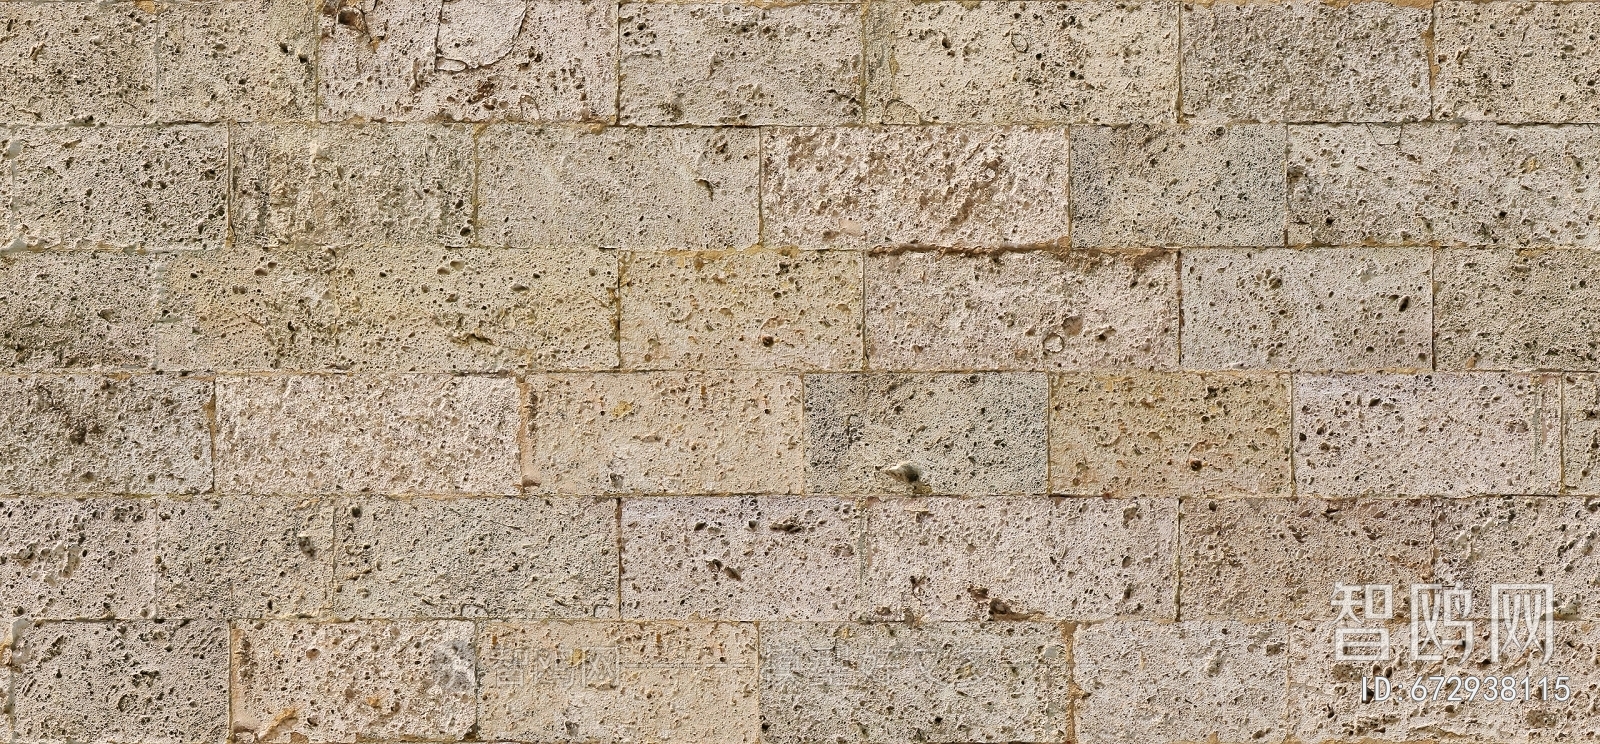 石材砖墙文化石贴图